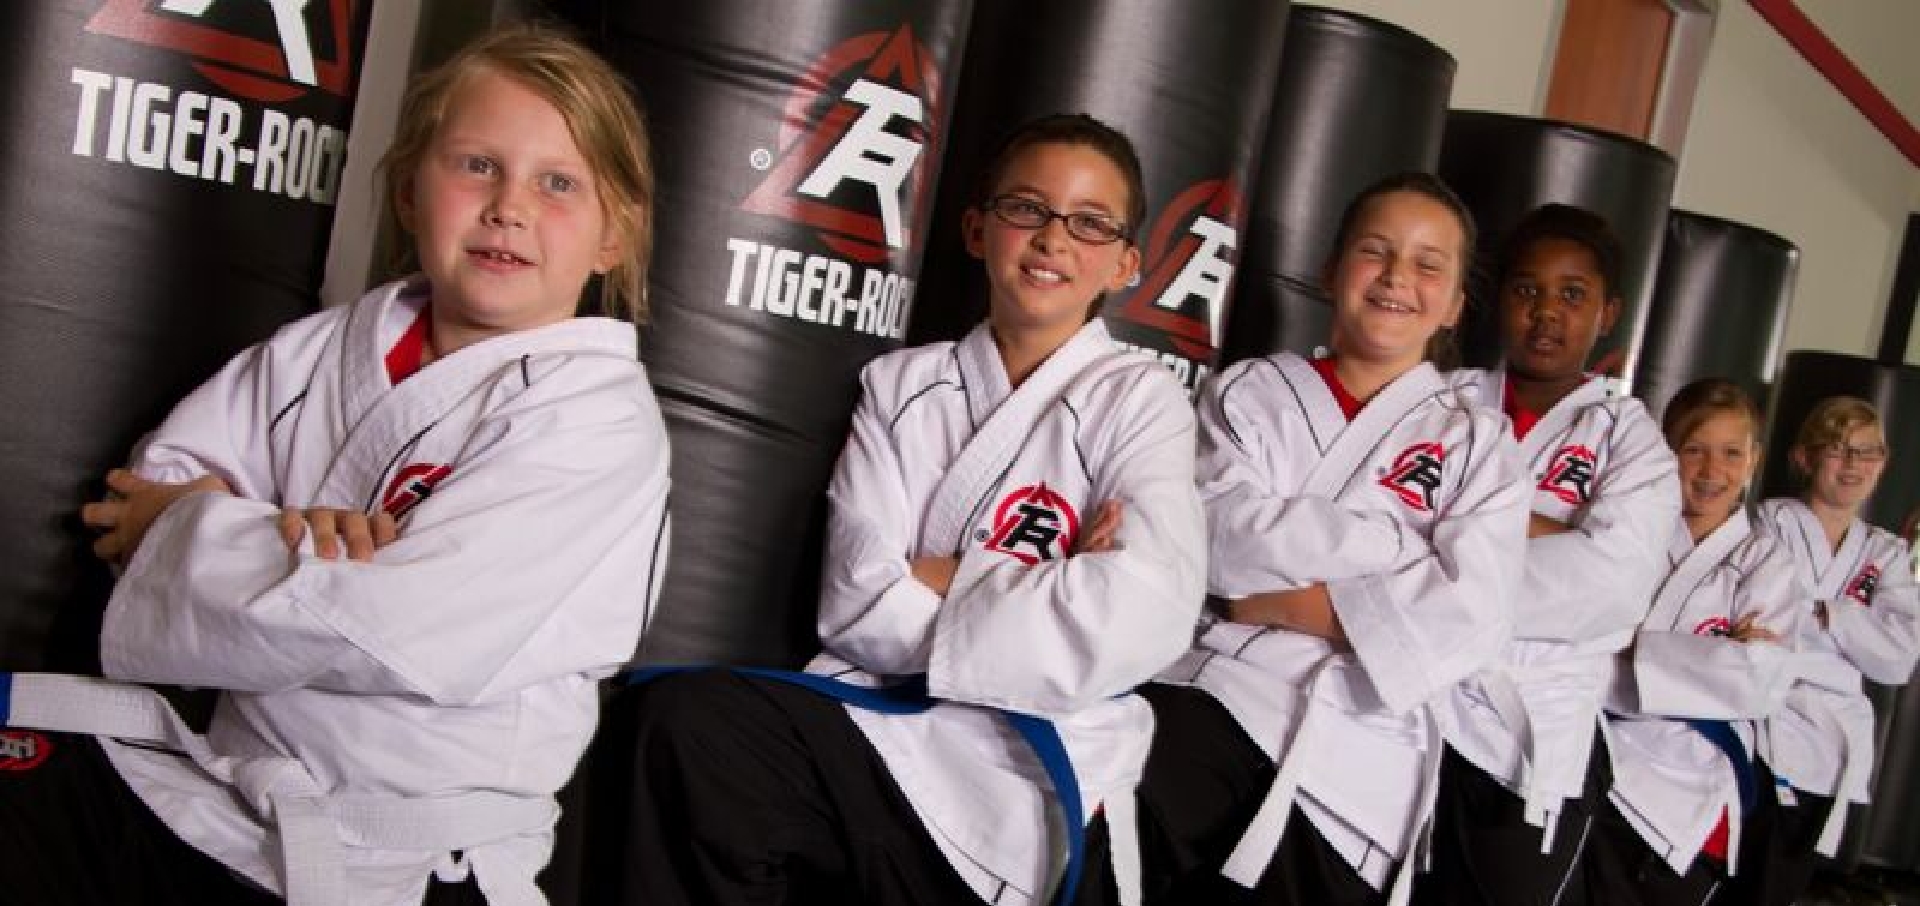 Tiger-Rock  Martial Arts Academy